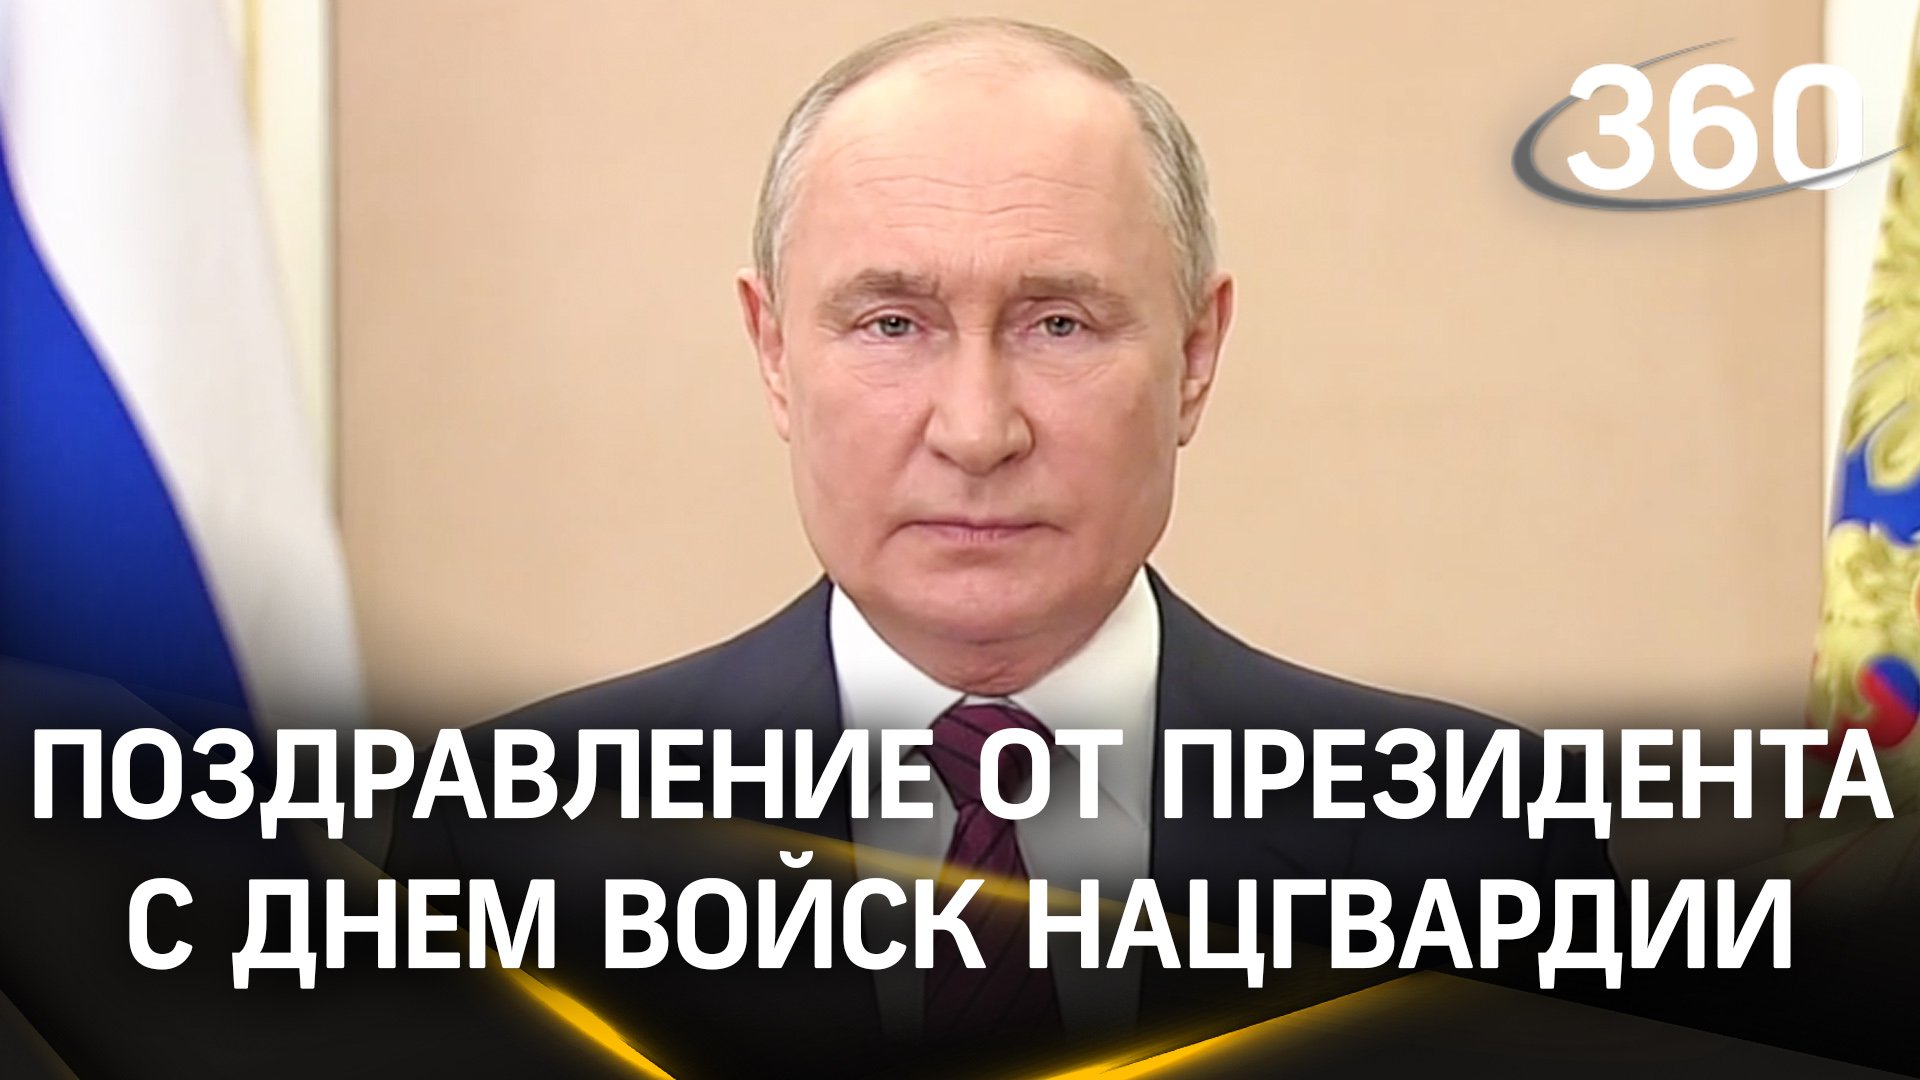 «Вы проводите дерзкие операции»: обращение Путина по случаю Дня войск национальной гвардии